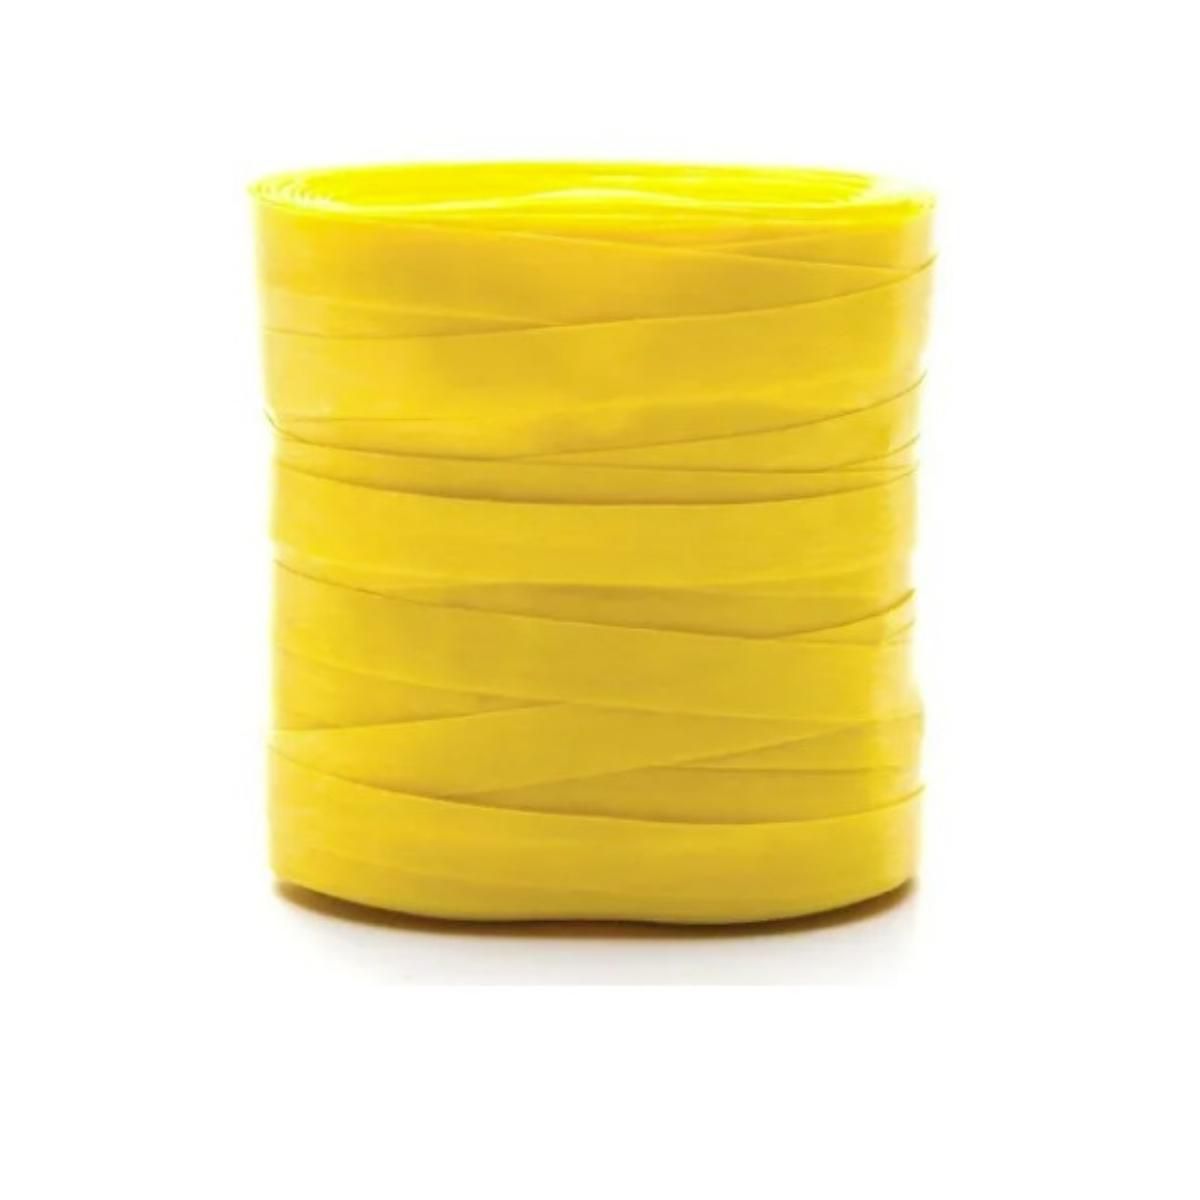 Fitilho 5MMX50M Amarelo Canario 1 unidade​​ - Saco de Presente, Saco  Transparente, Saco Adesivado, Embalagem Trufas, Tapetinhos para Doces,  Toalha mesa plástico, Descartáveis